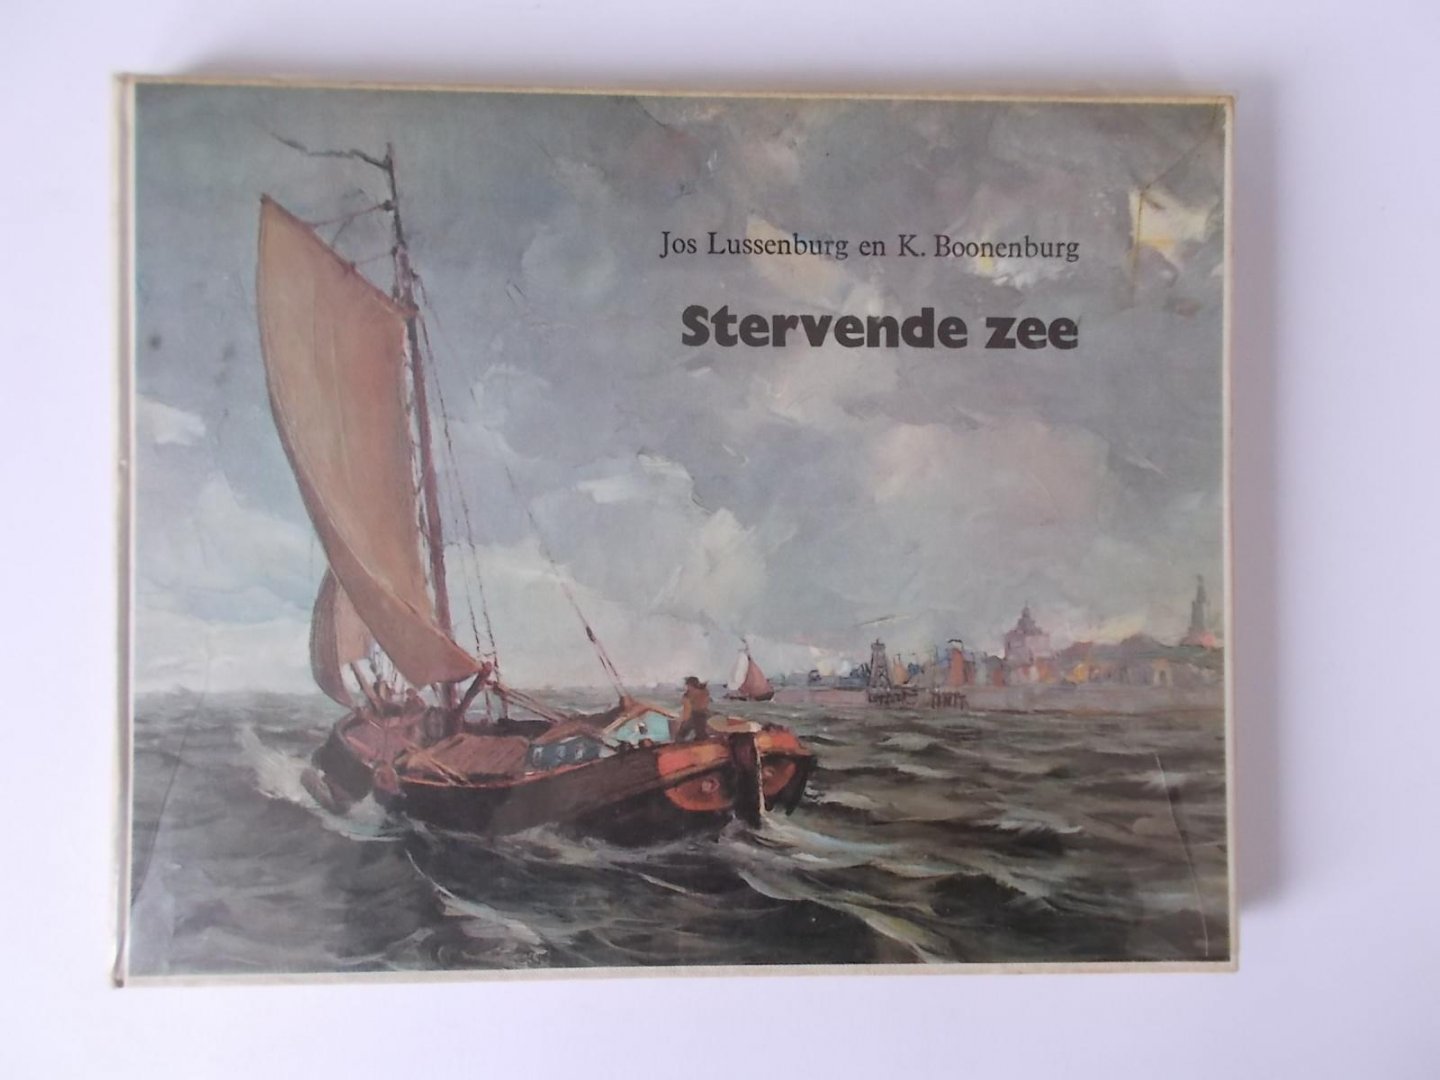 Lussenburg, Jos en Boonenburg, K - Stervende Zee - Over de ZUIDERZEE van vroeger, geillustreerd met de schilderijen van Lussenburg.